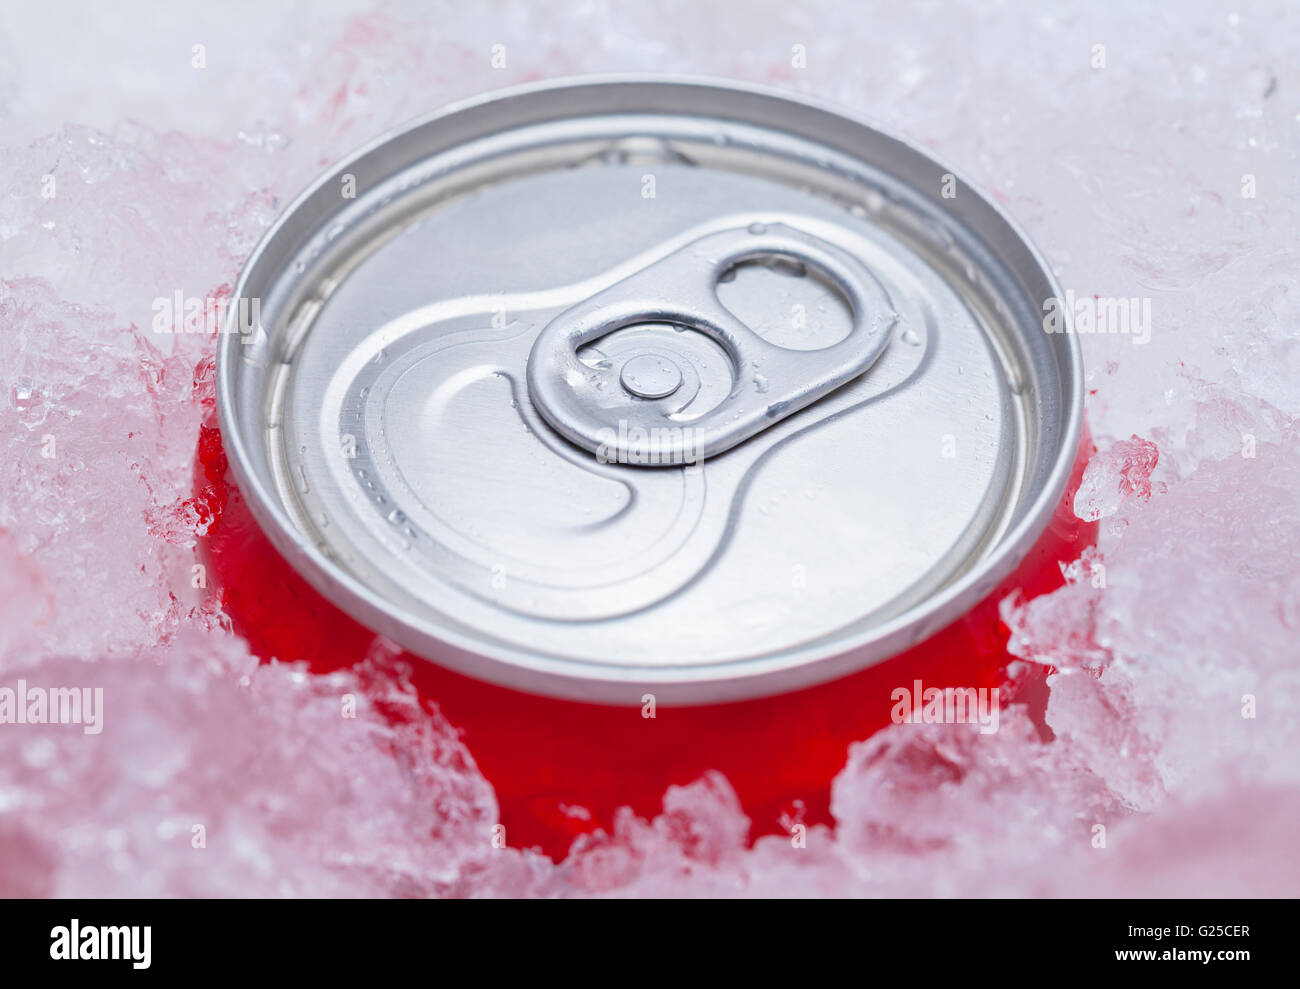 Una lata de refresco rojo empaquetados en hielo. Foto de stock